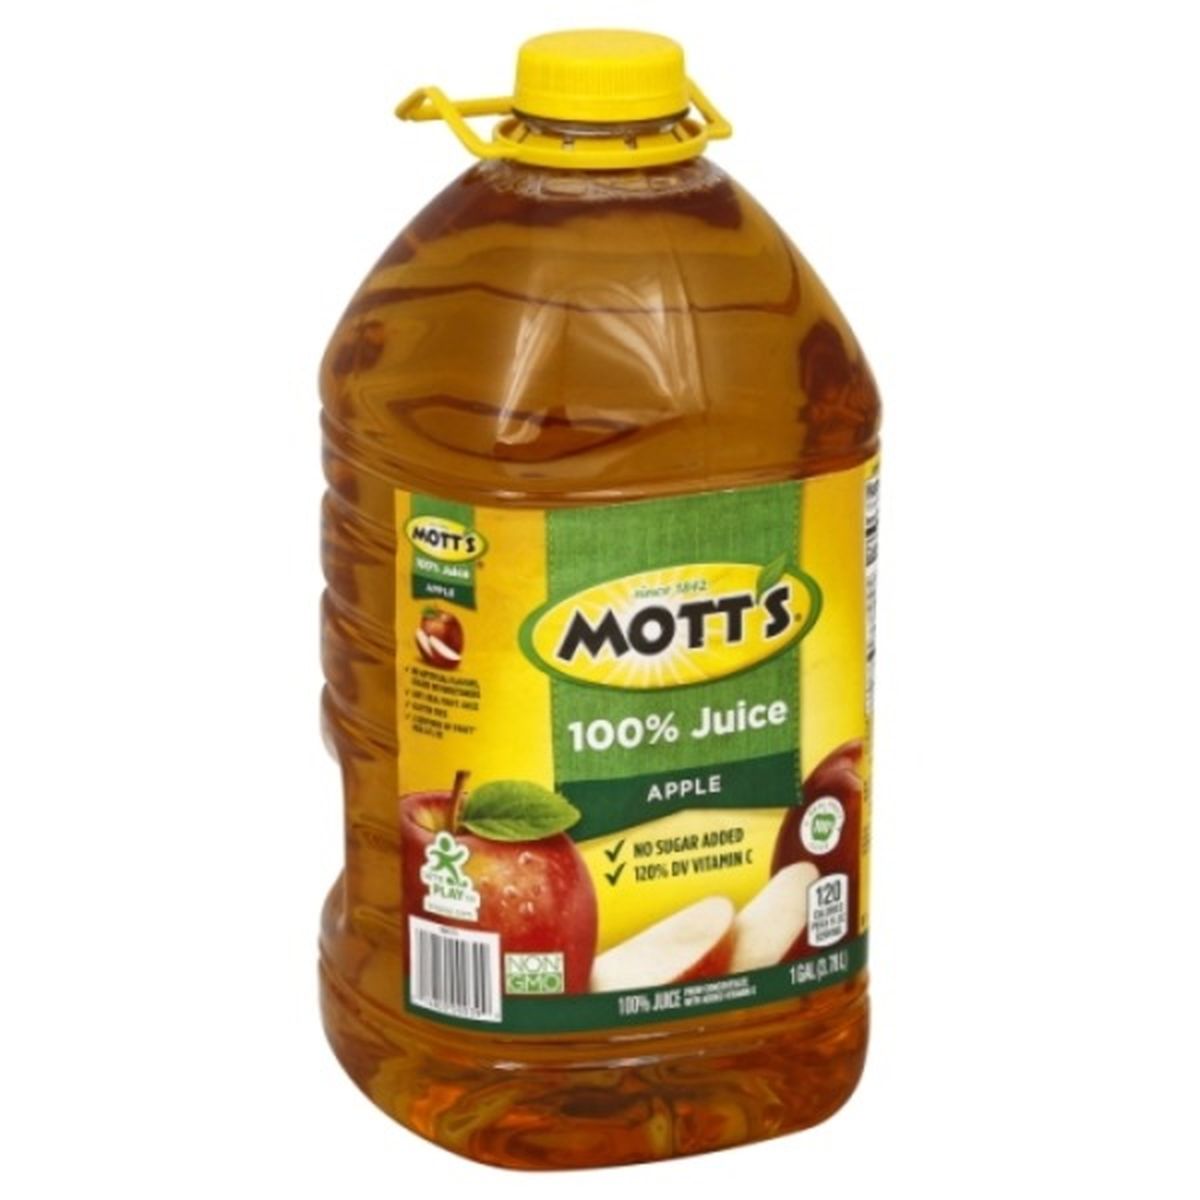 Calories in Mott's 100% Juice, Apple